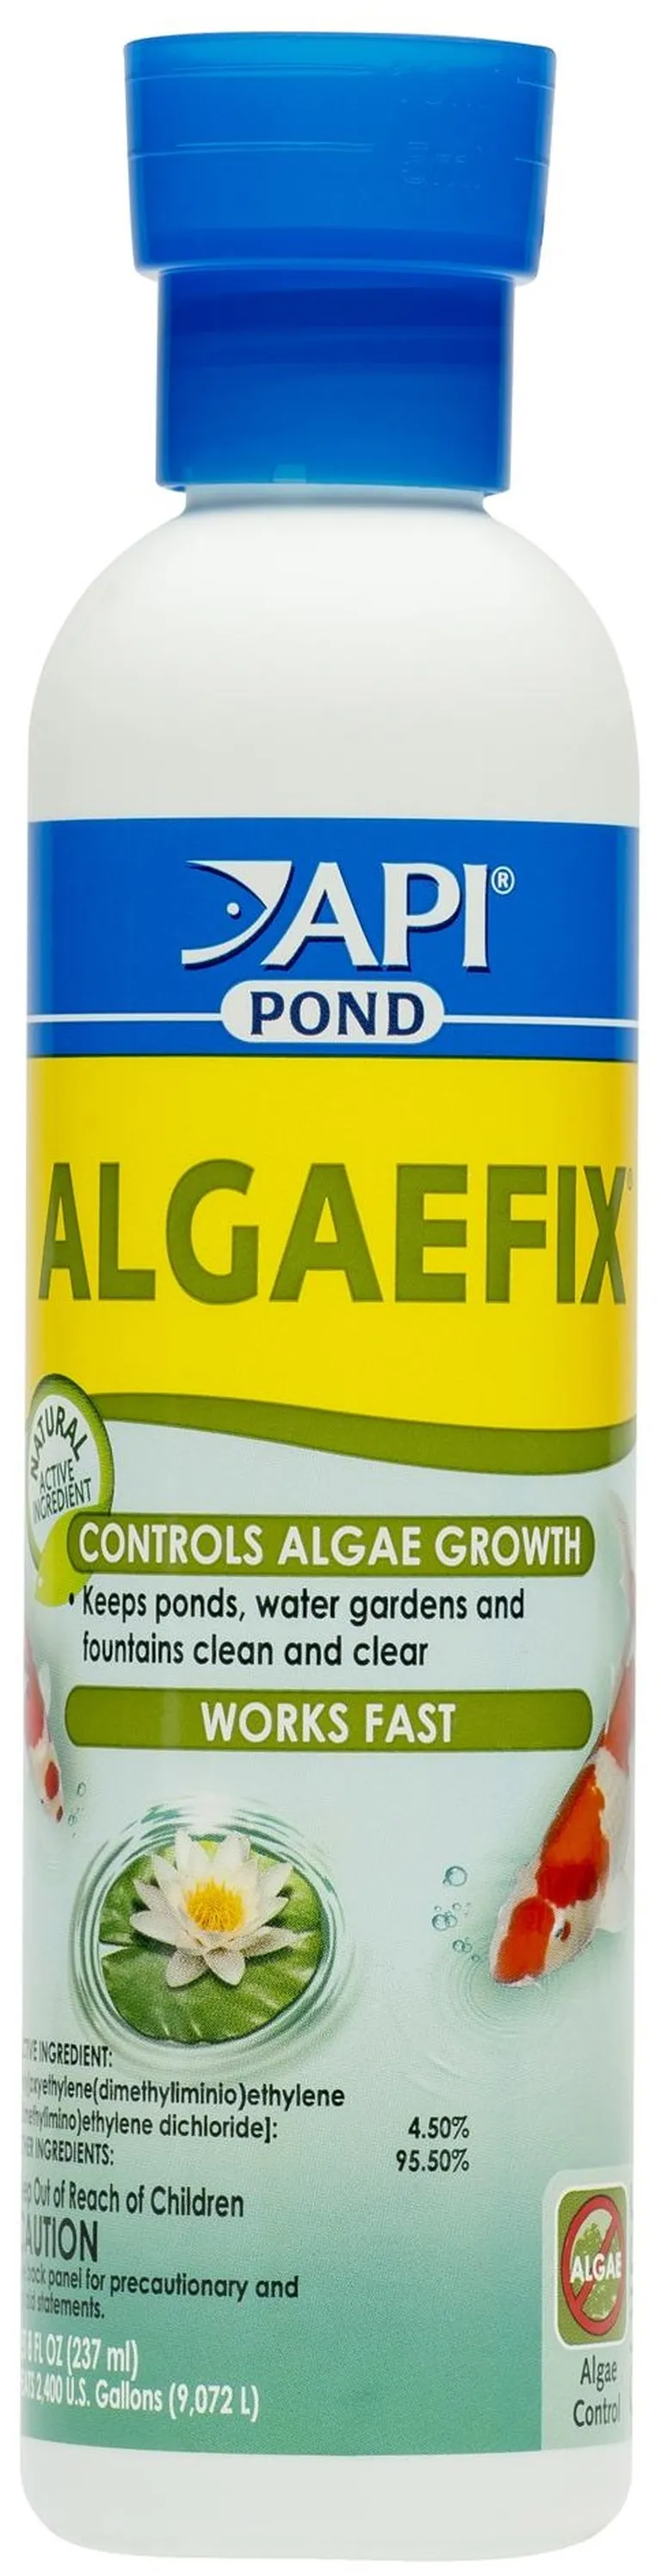 PondCare AlgaeFix Algae Control for Ponds Photo 1